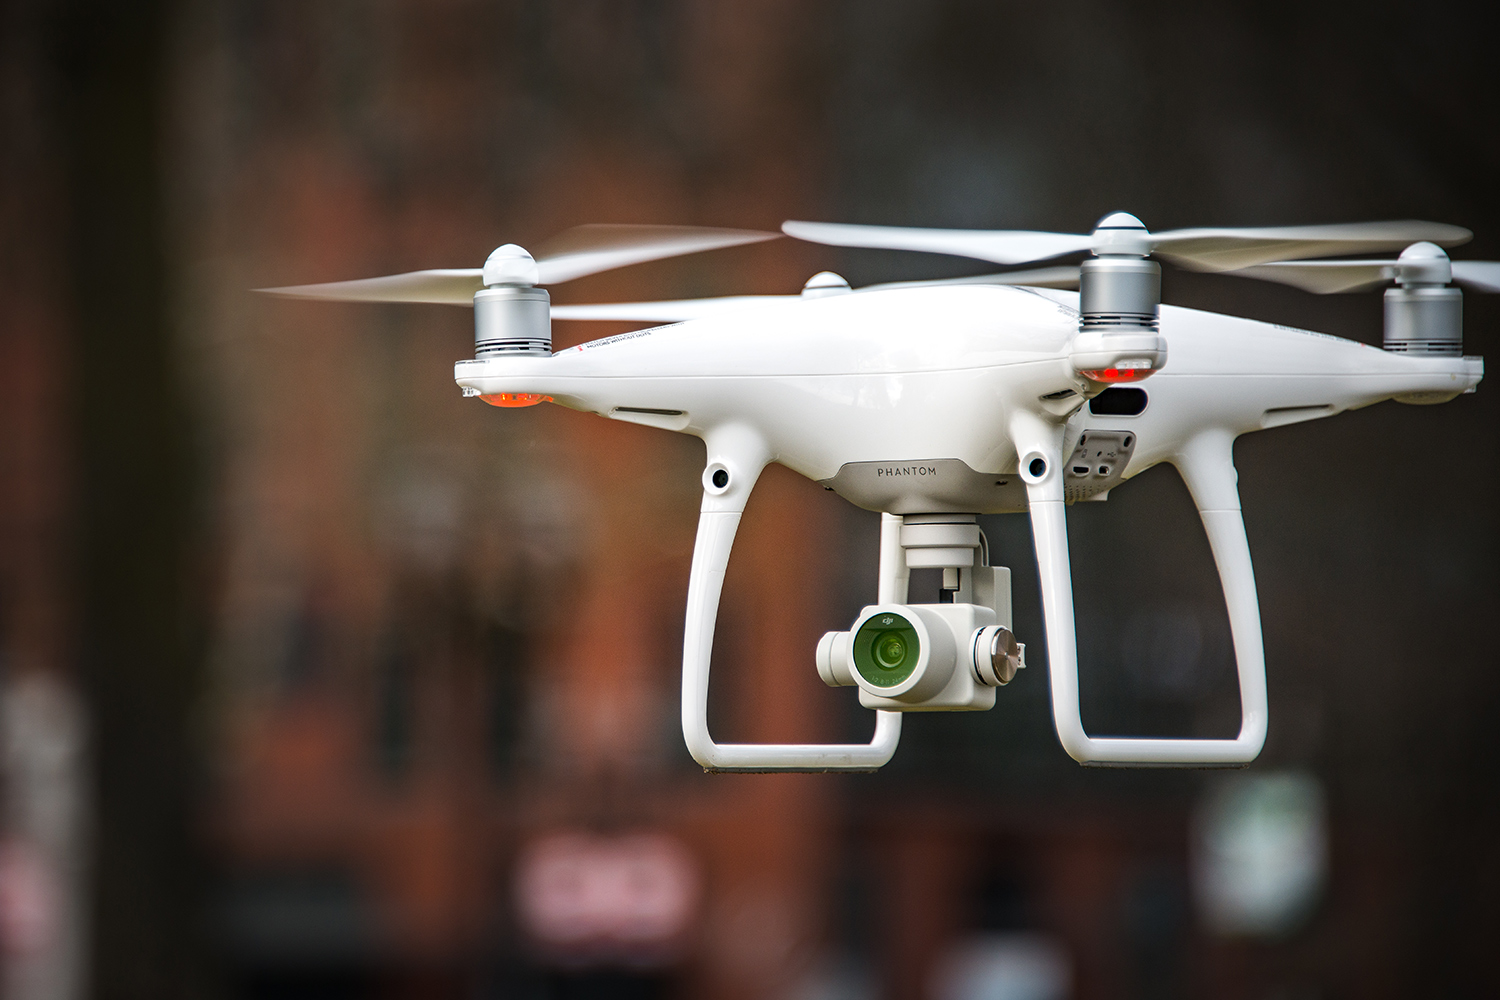 DJI Phantom 4 Pro Quadcopter Review: Our Favorite Drone